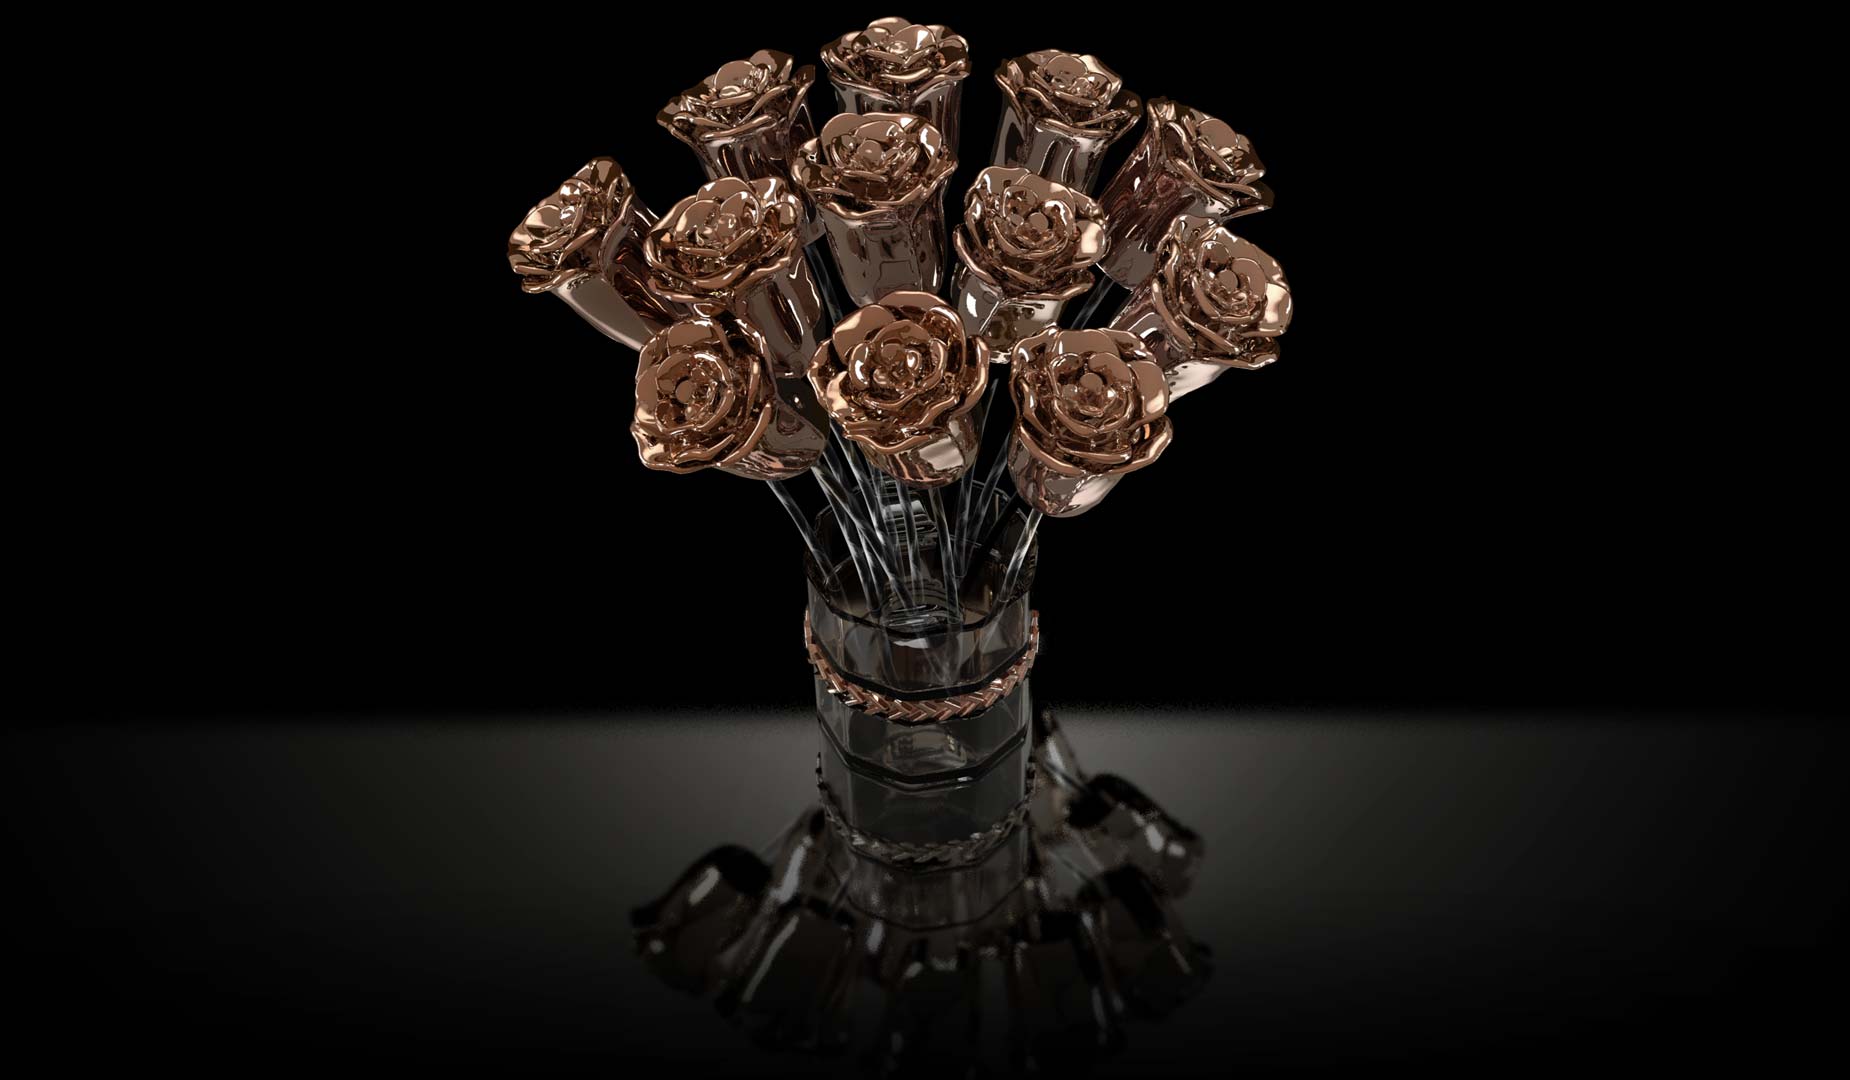 3D Rose Gold Roses